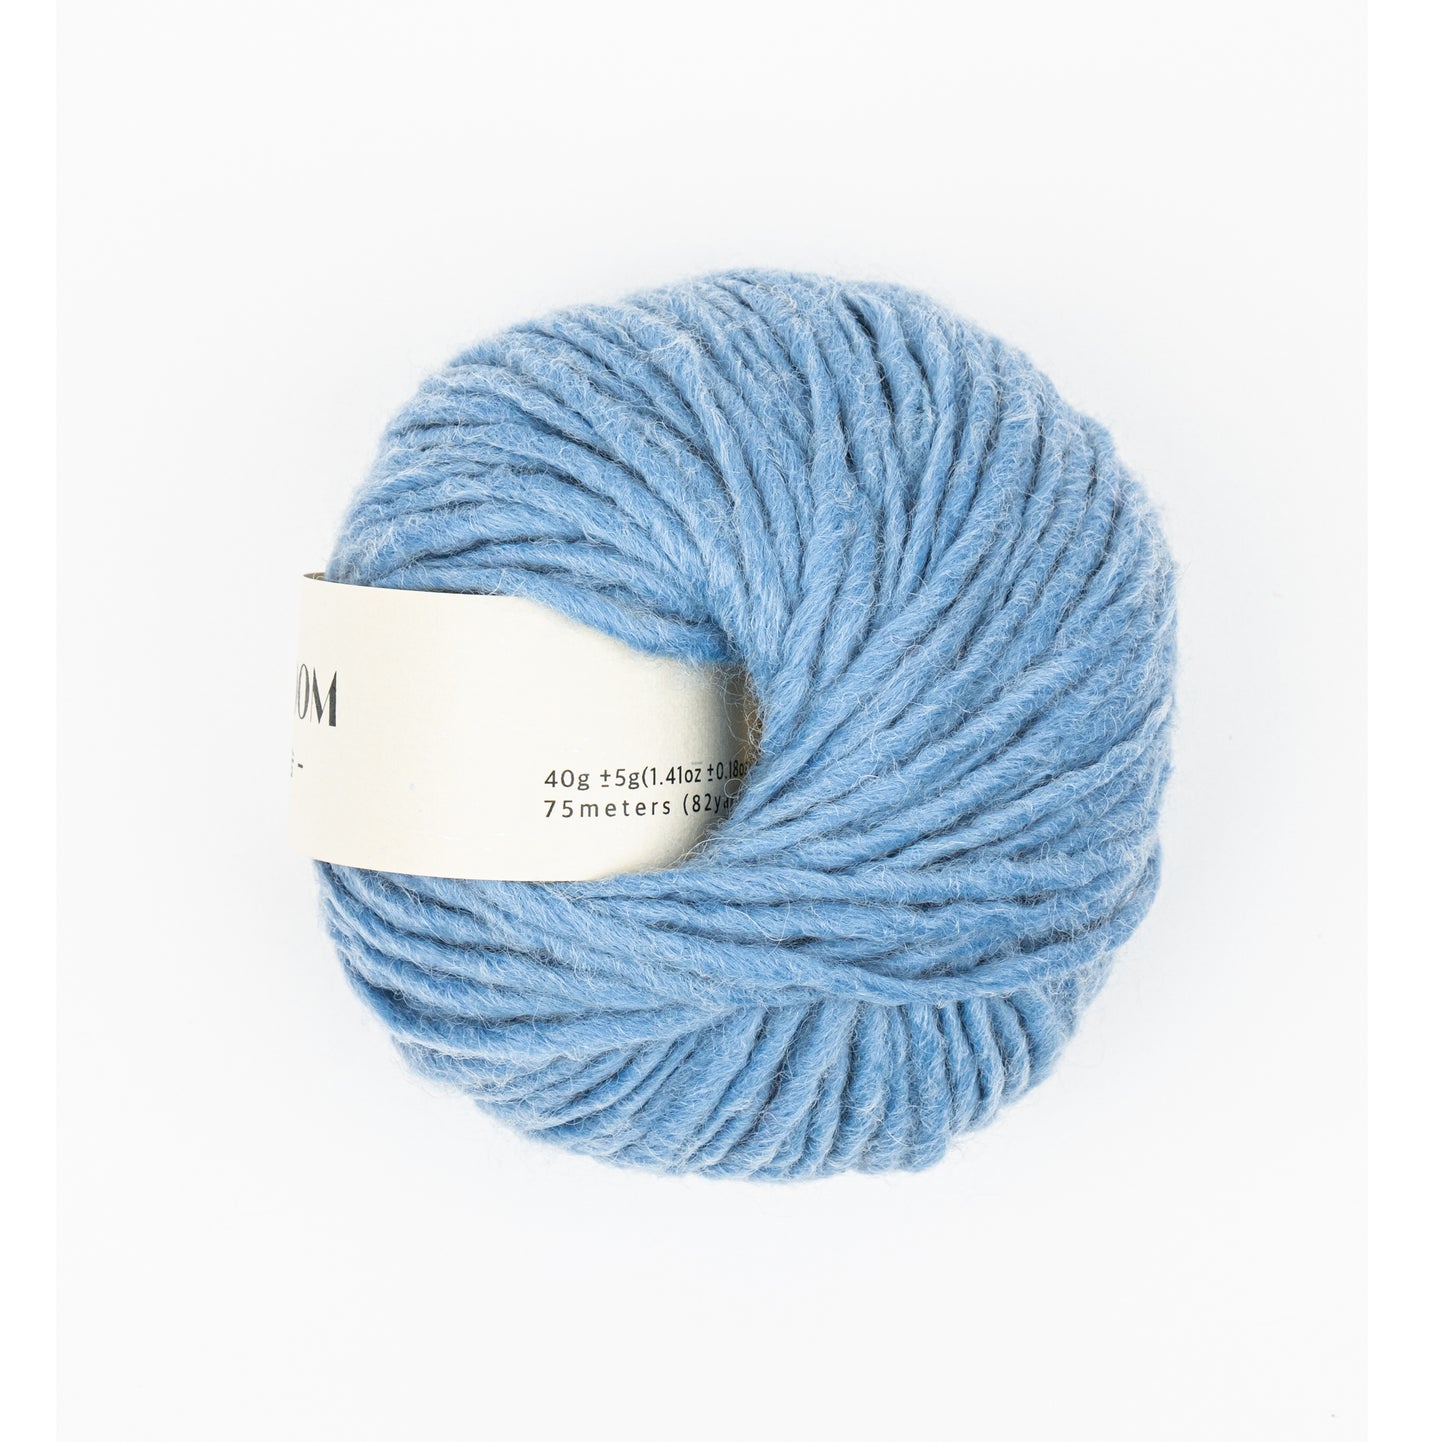 DDASOOM, Wool Acrylic yarn, Light and fluffy, 11 pretty colors